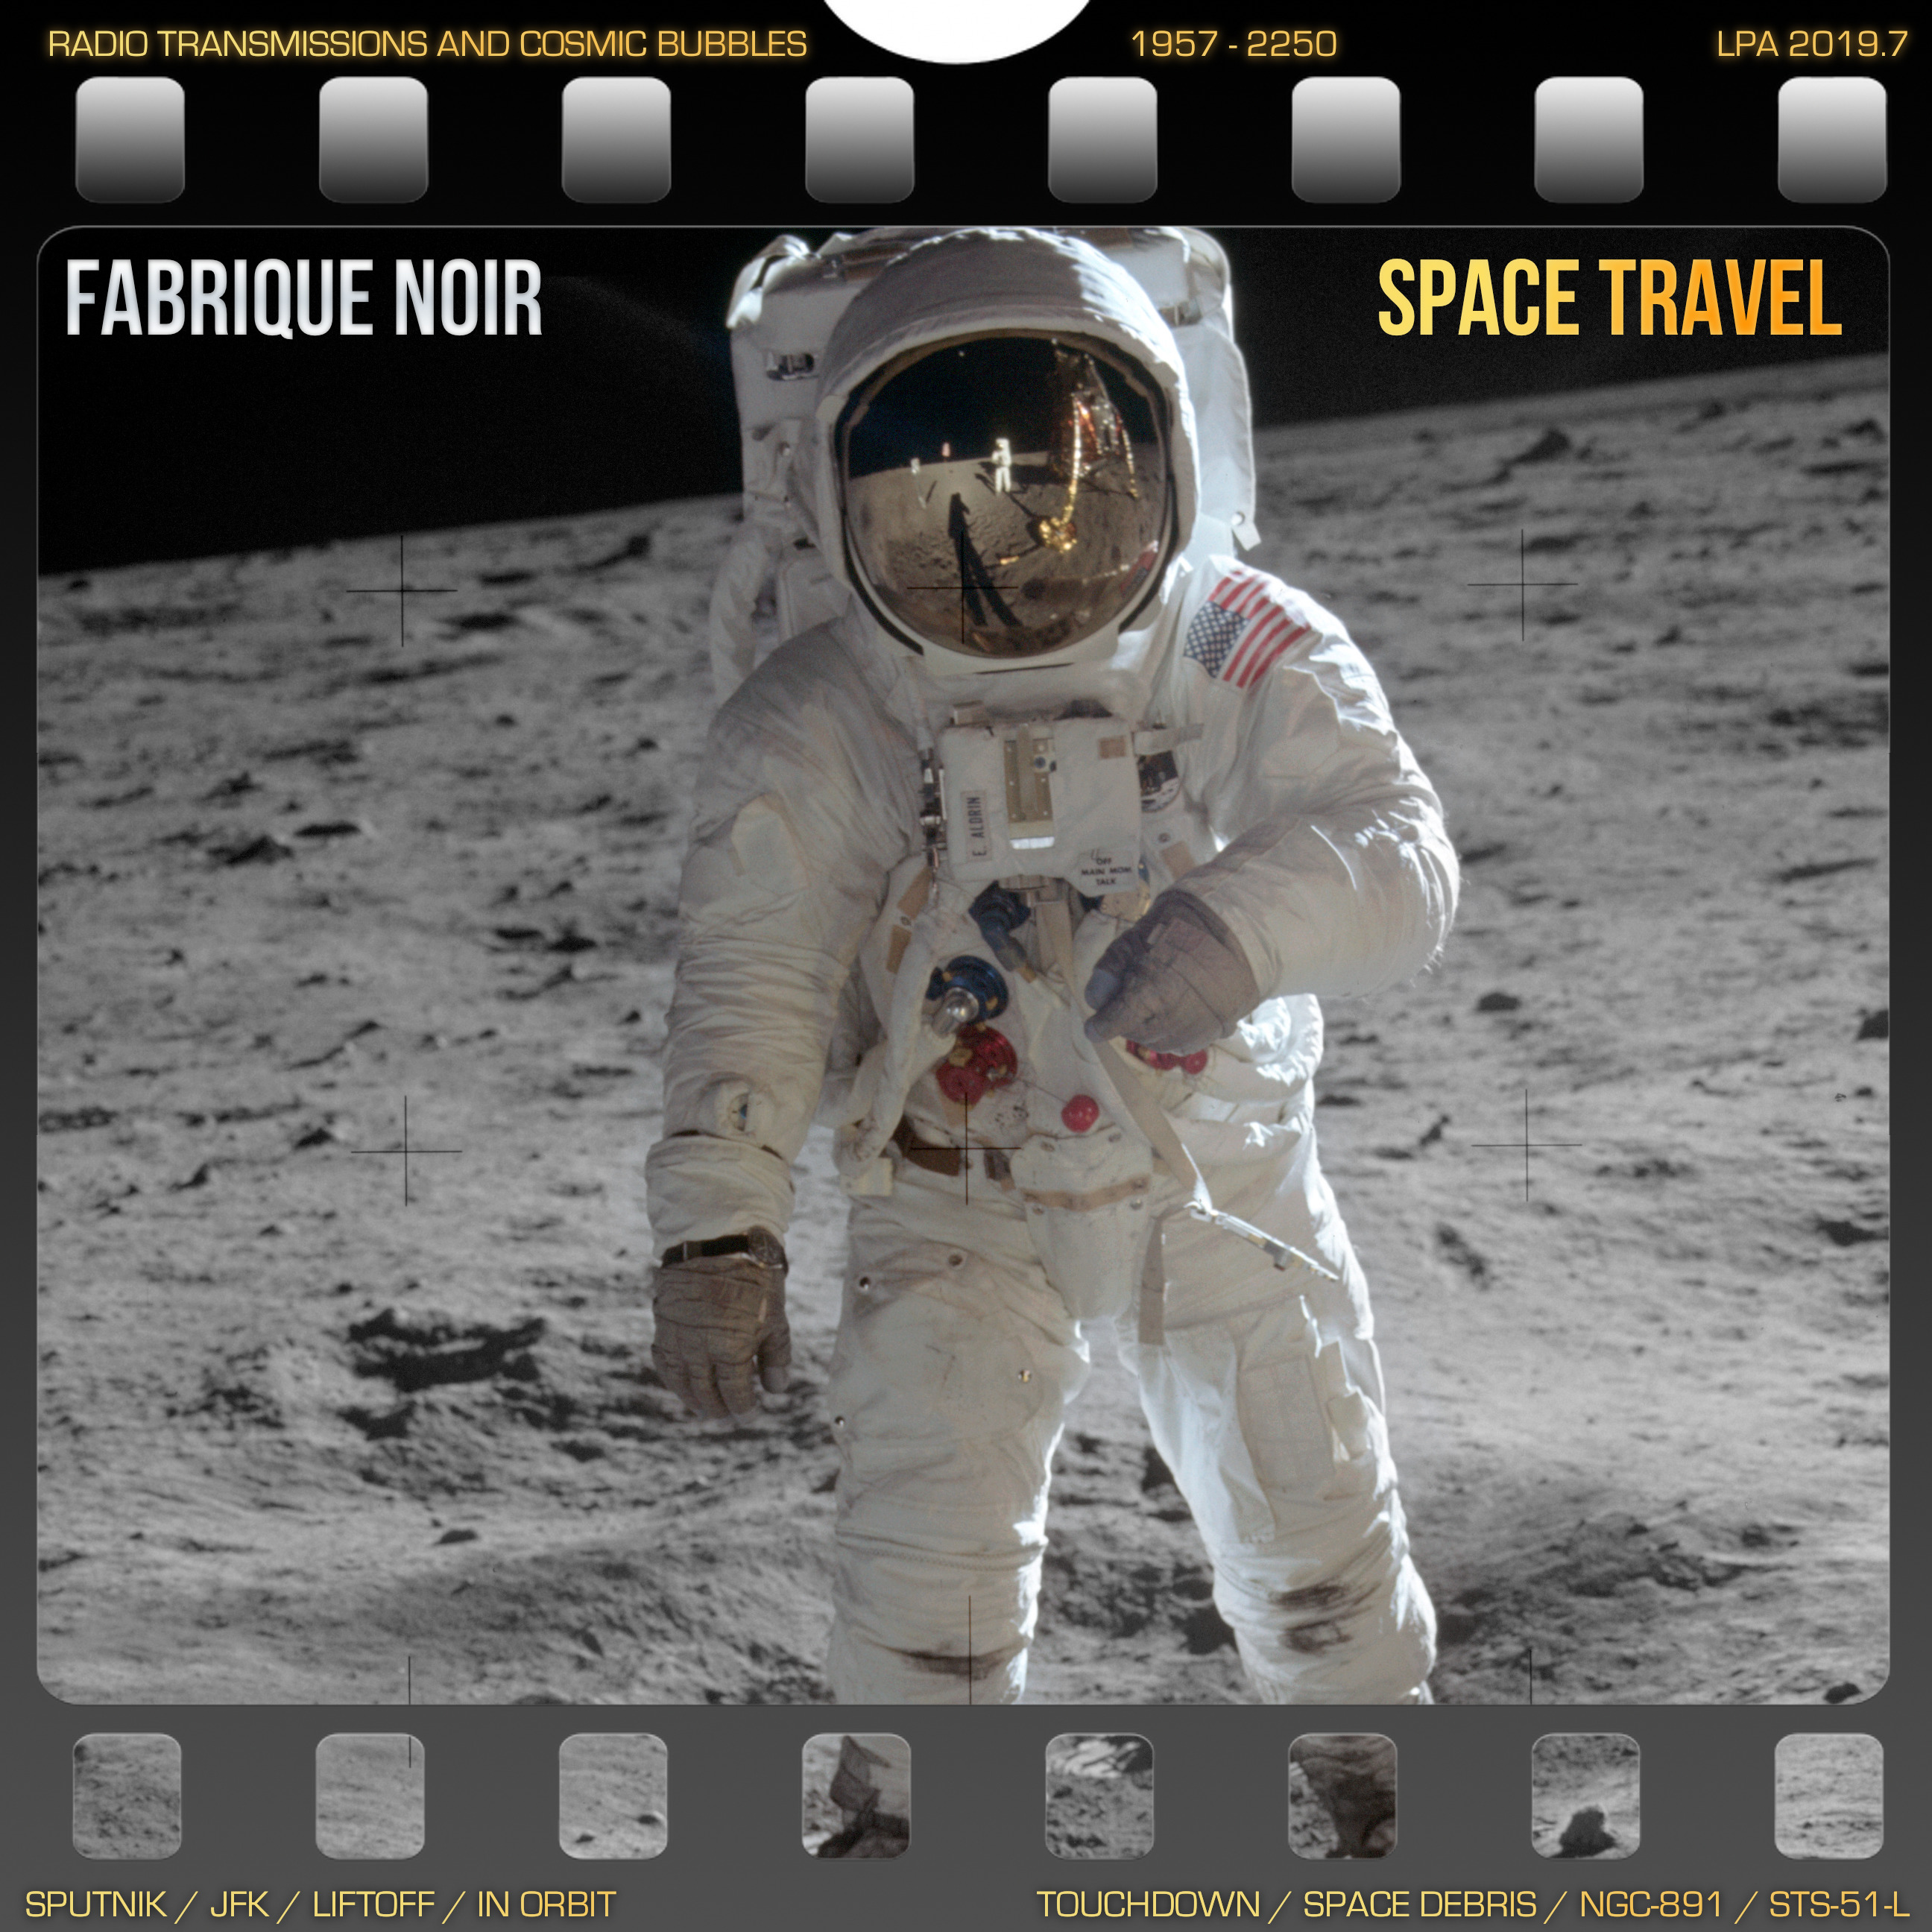 Space Travel Album Art